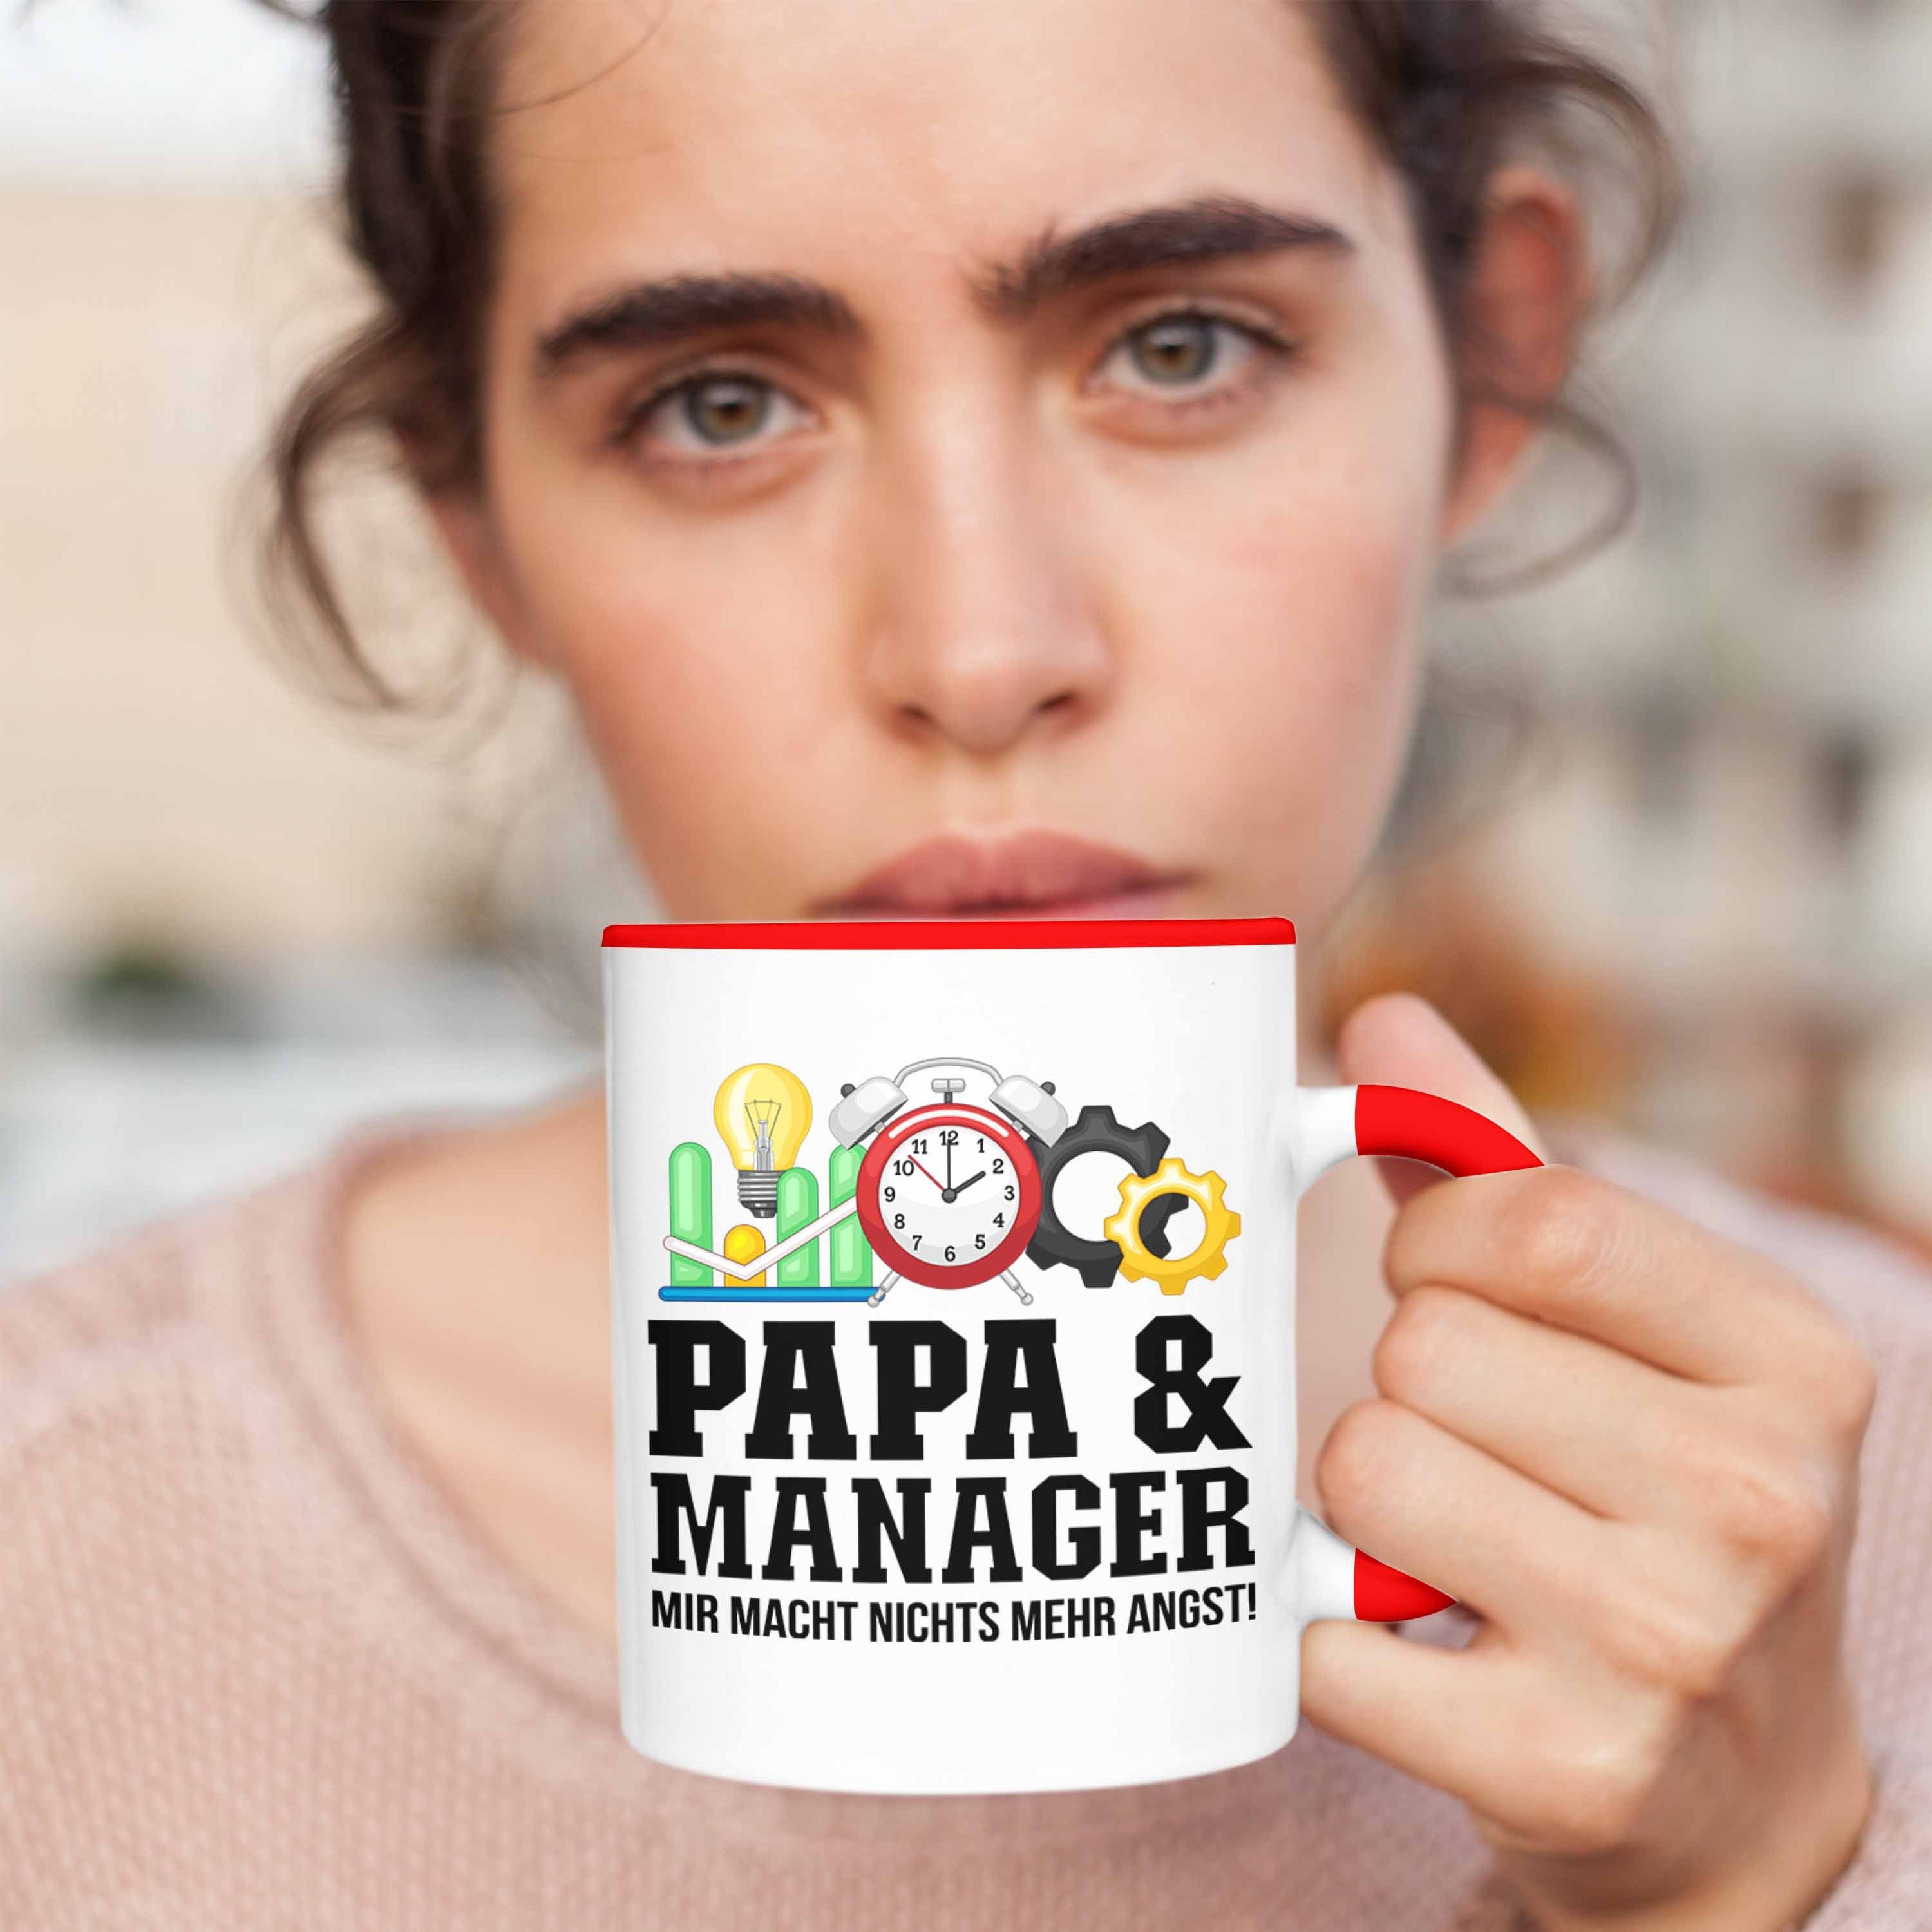 Vater Tasse und Rot Geb Manager Manager - Trendation Papa für Geschenkidee Tasse Trendation